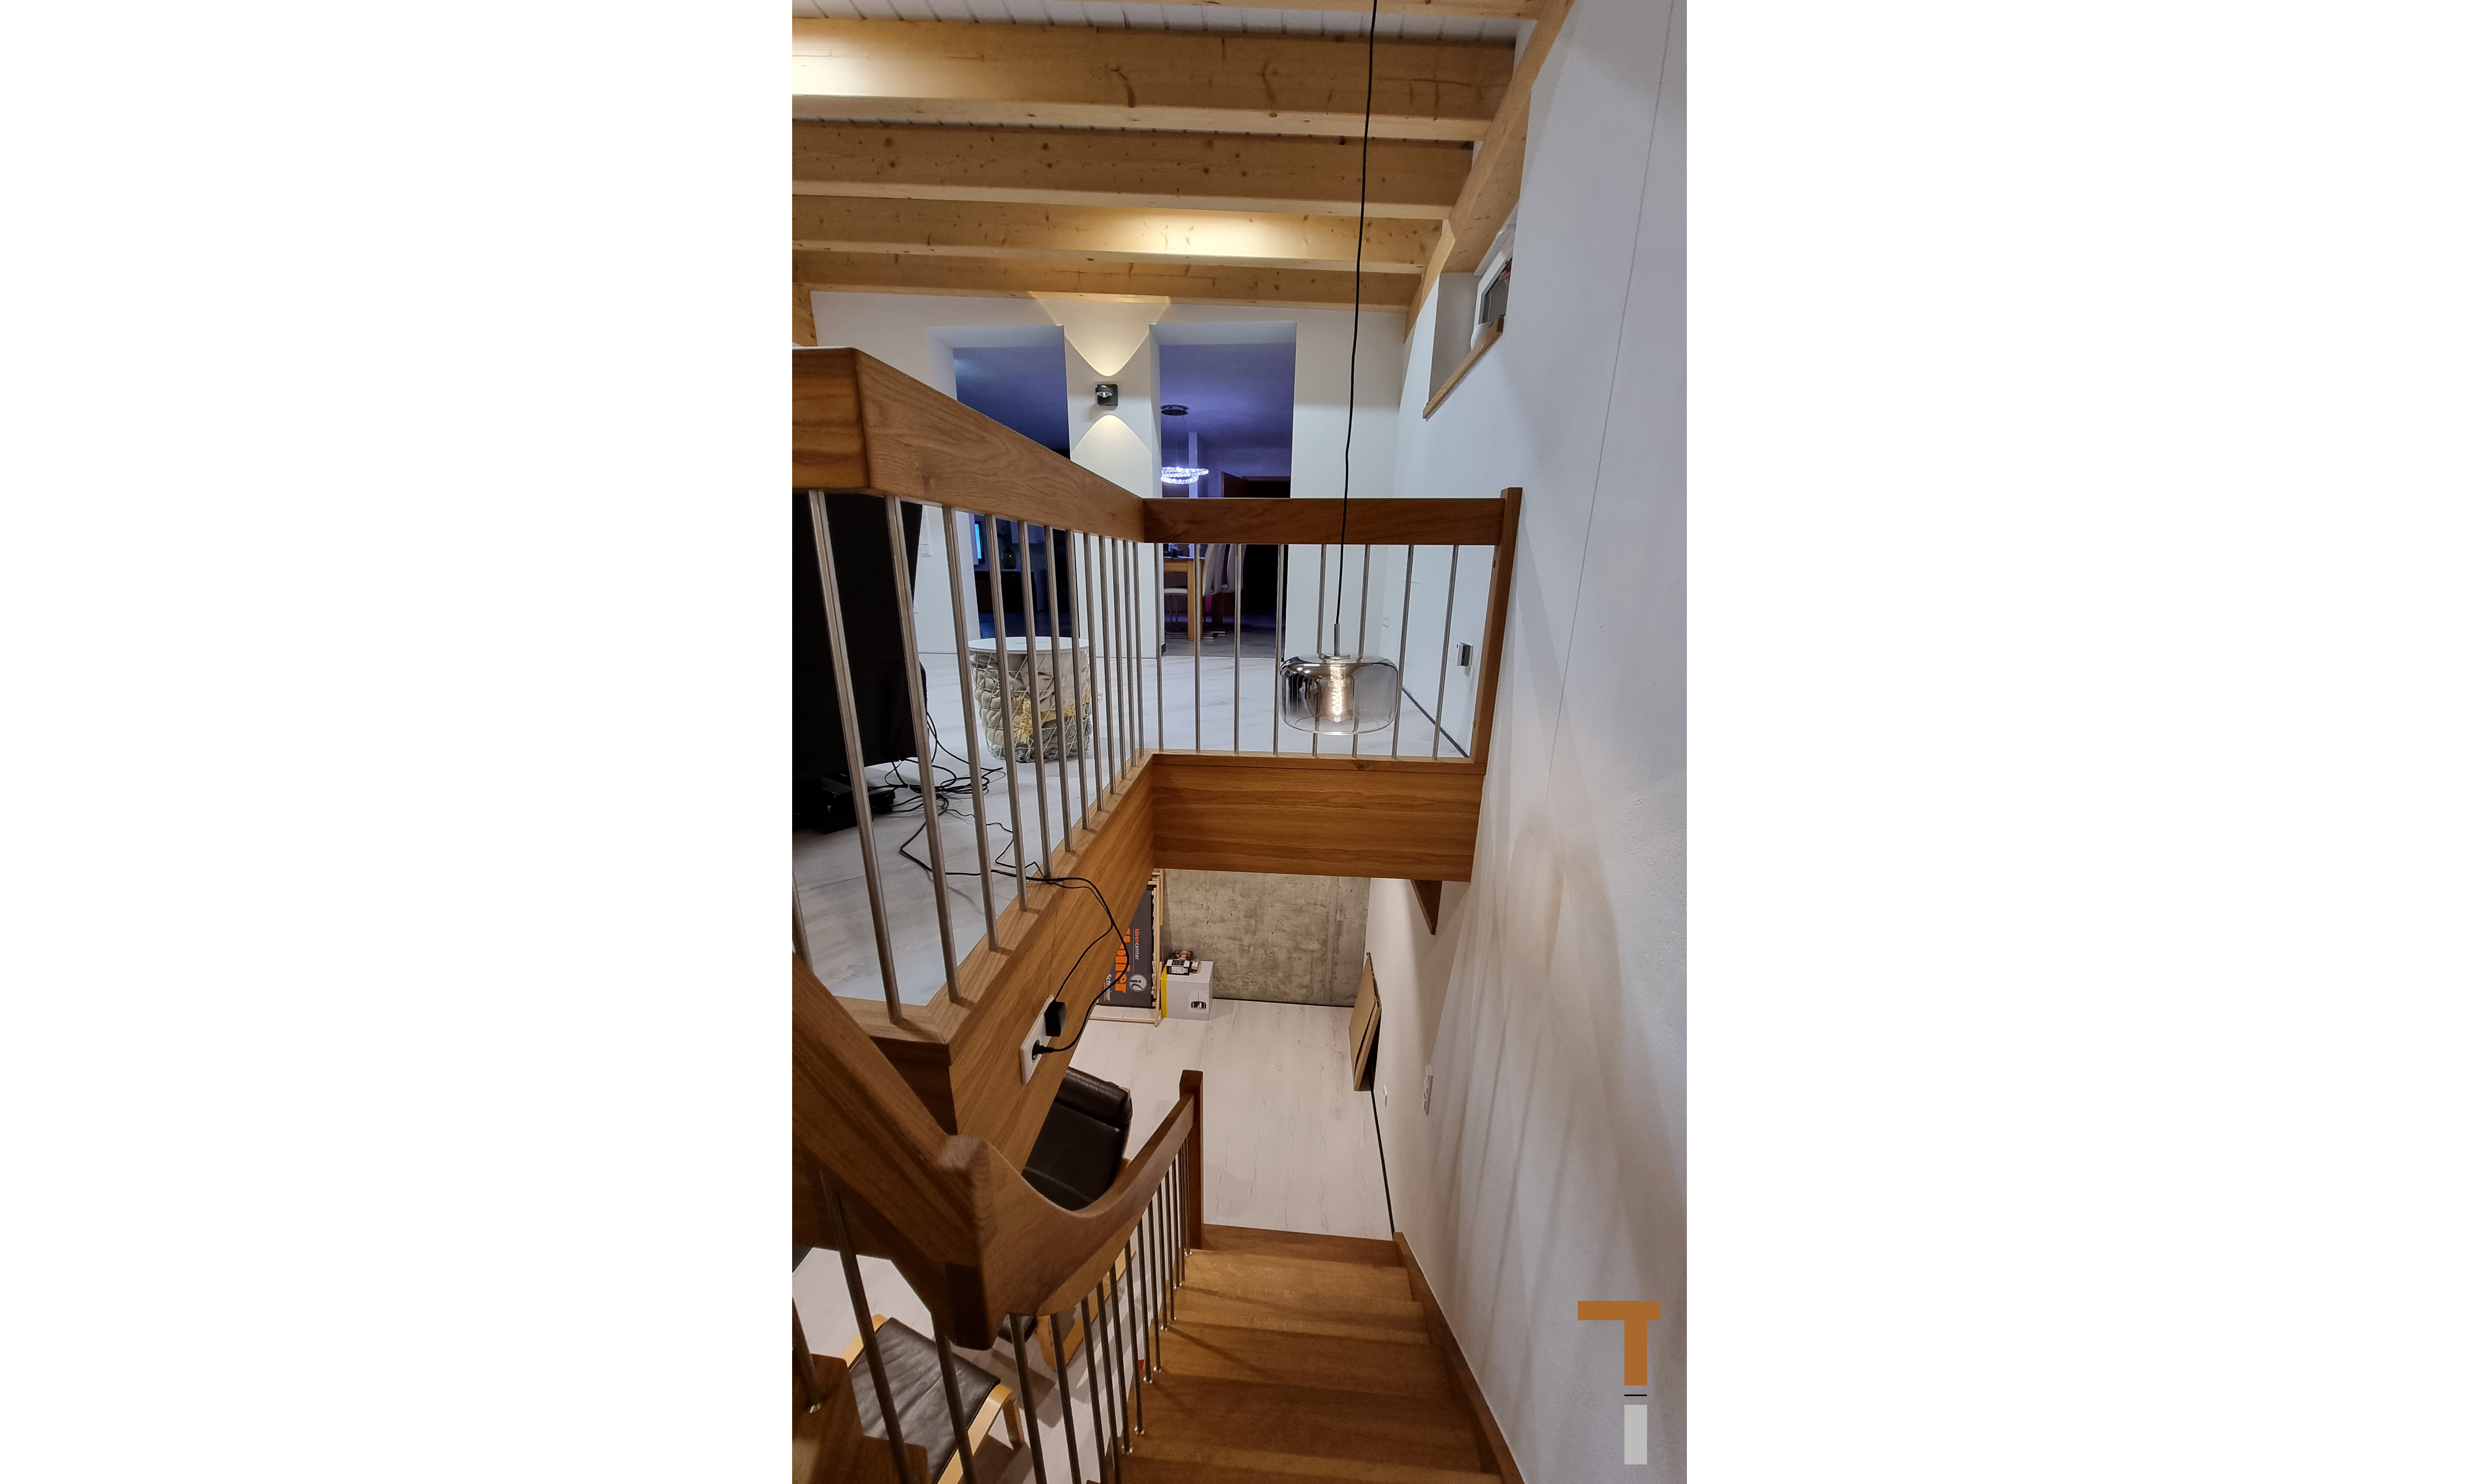 Wohnhausanbau mit Terrasse - Treppe zum neuen Untergeschoss